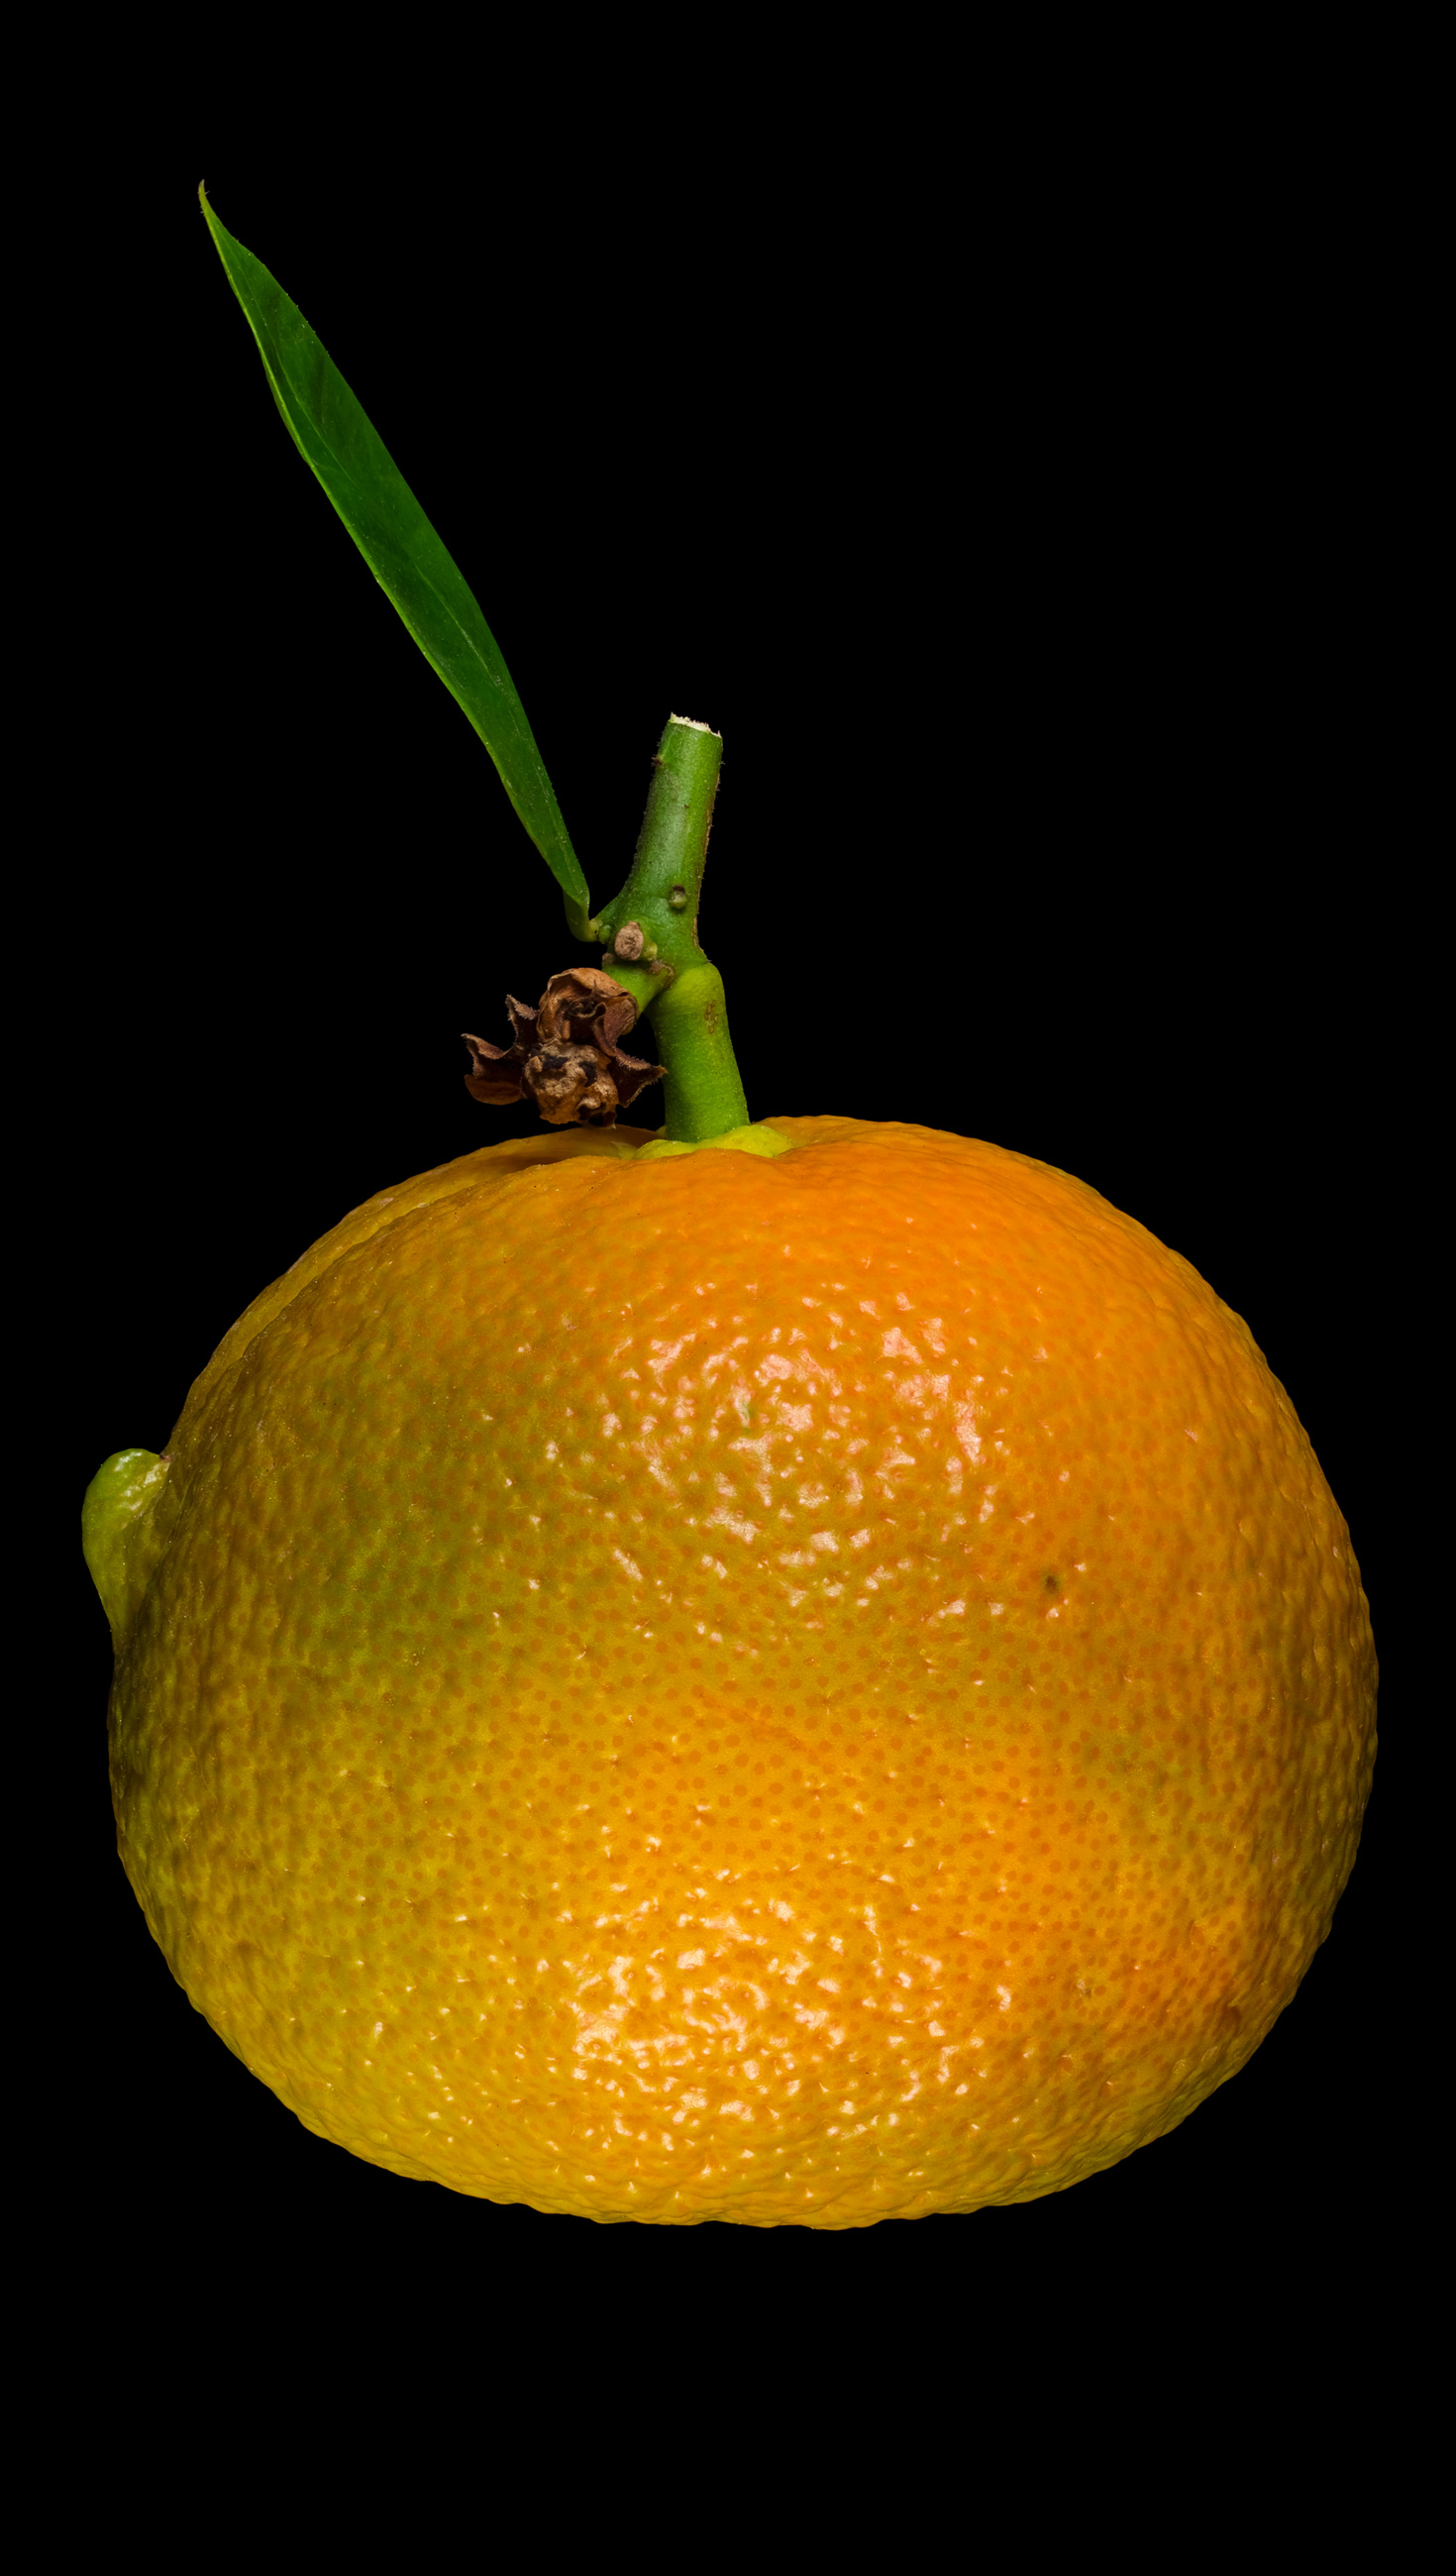 Horned bitter orange: Citrus × aurantium ‚Corniculata‘